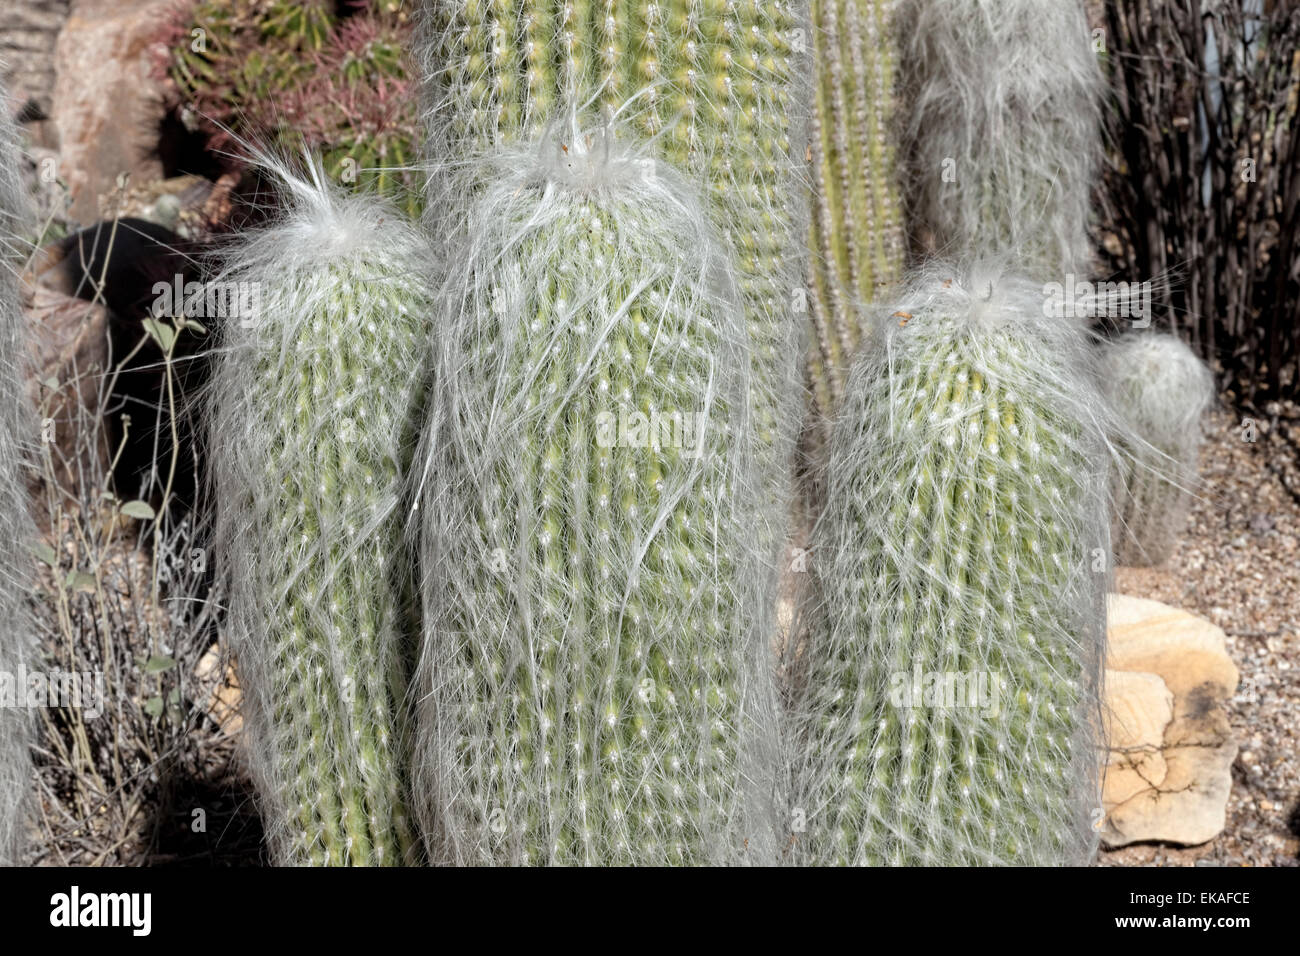 Cephalocereus senilis (Old Man Cactus) - Mexico Stock Photo